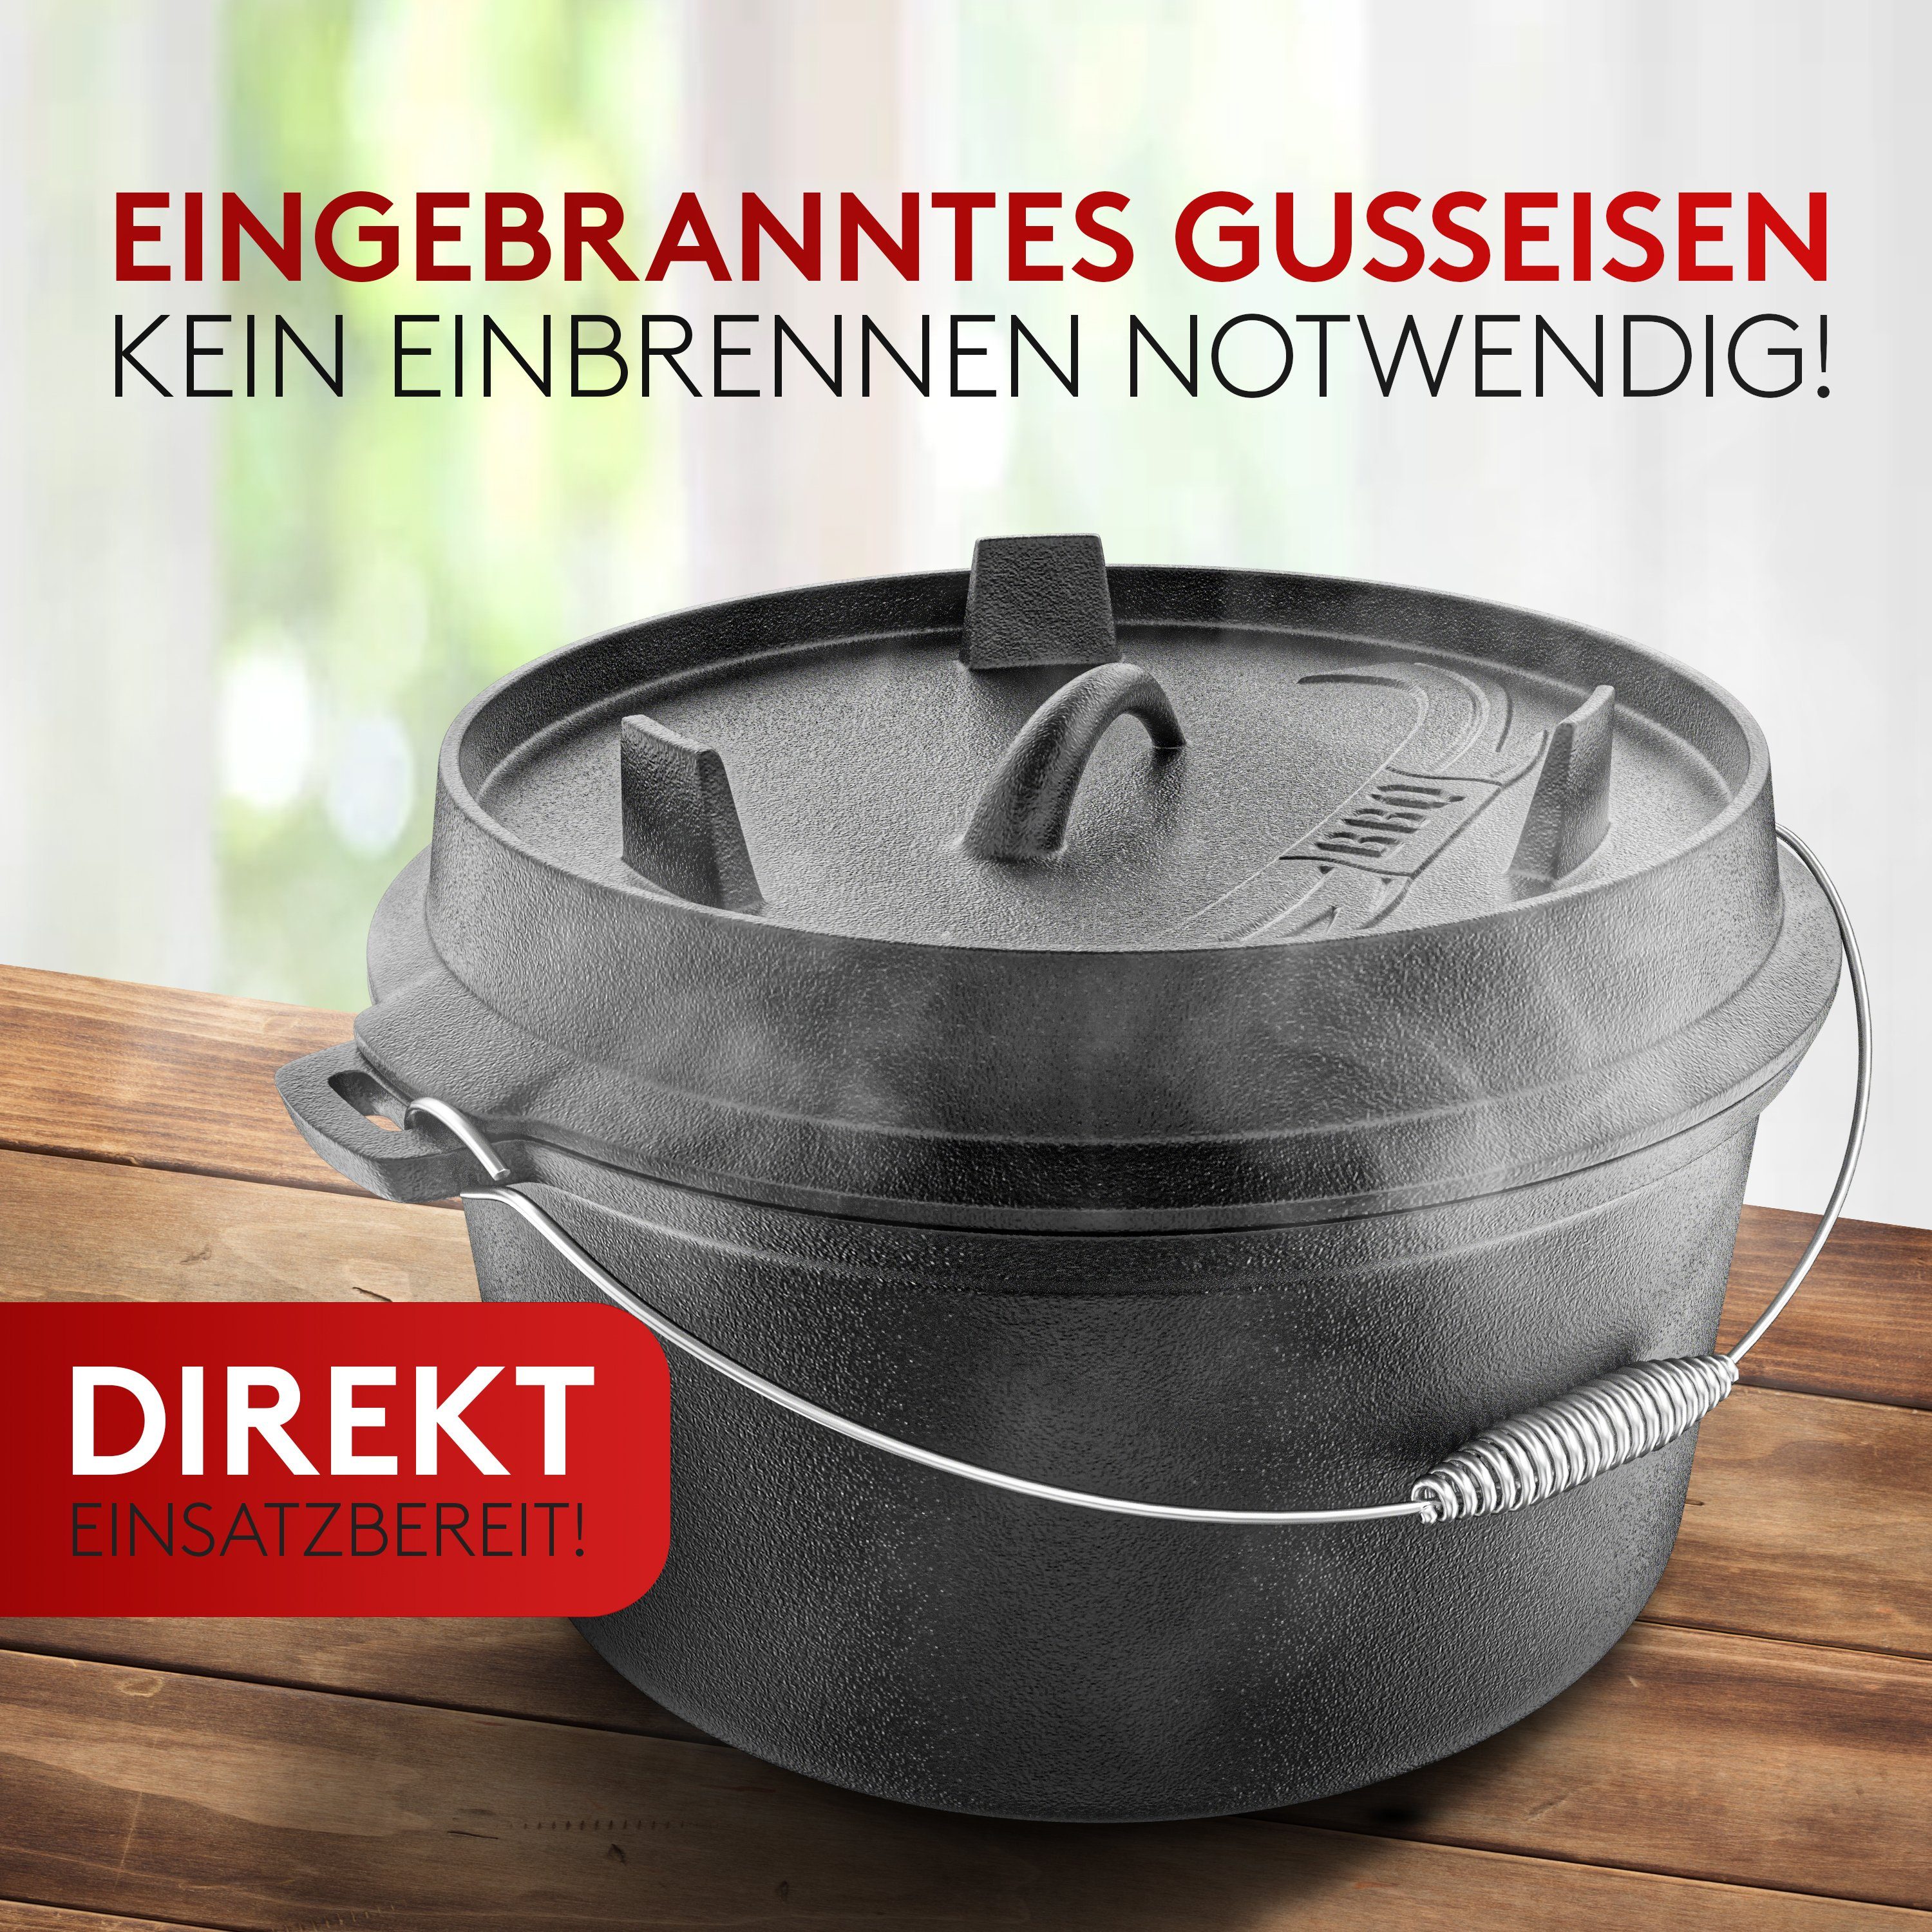 Amandi Feuertopf BBQ Dutch [7L] Dutch Set - - Edelstahl Induktion, Oven Original] Für [Das Gusseisen, Oven